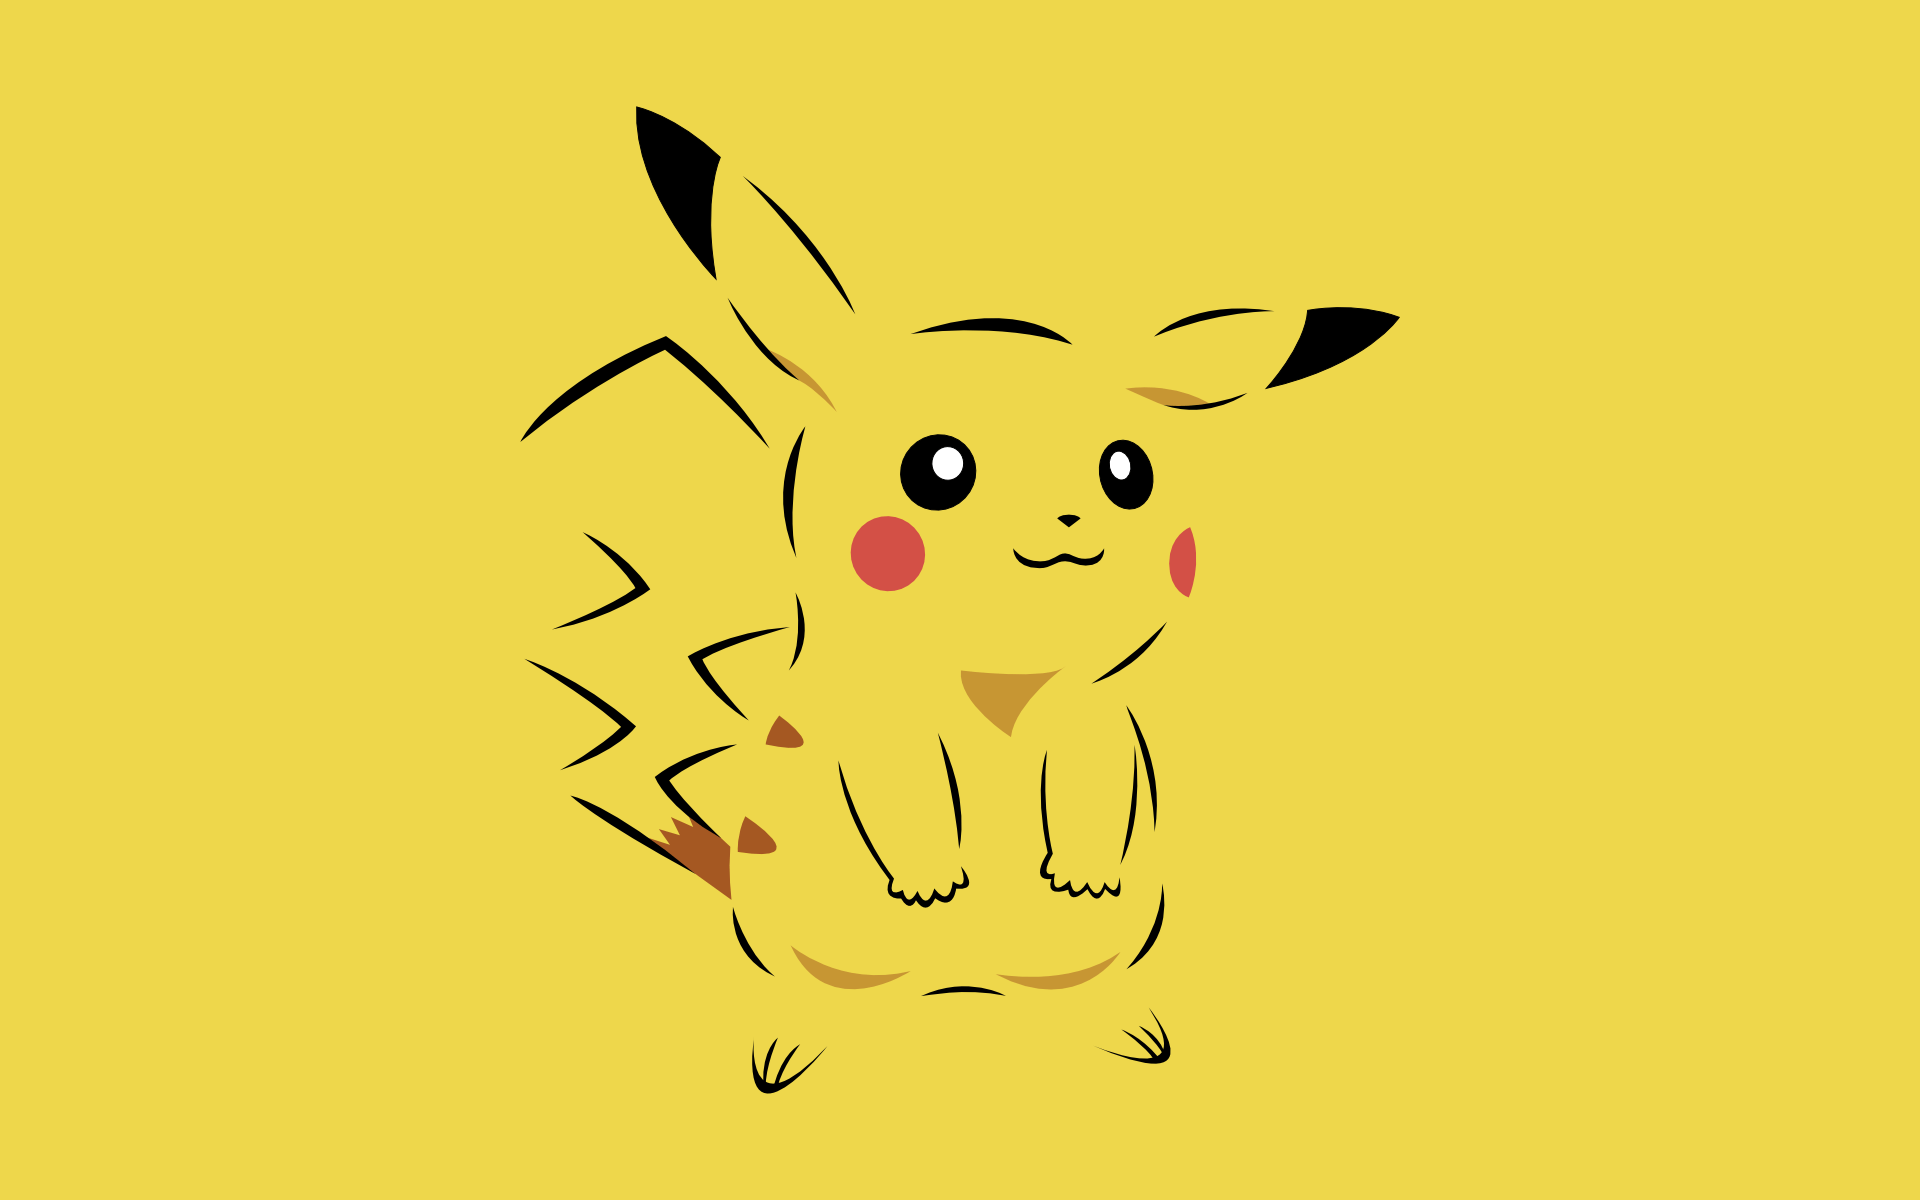 Best Pikachu Pokemon Cards